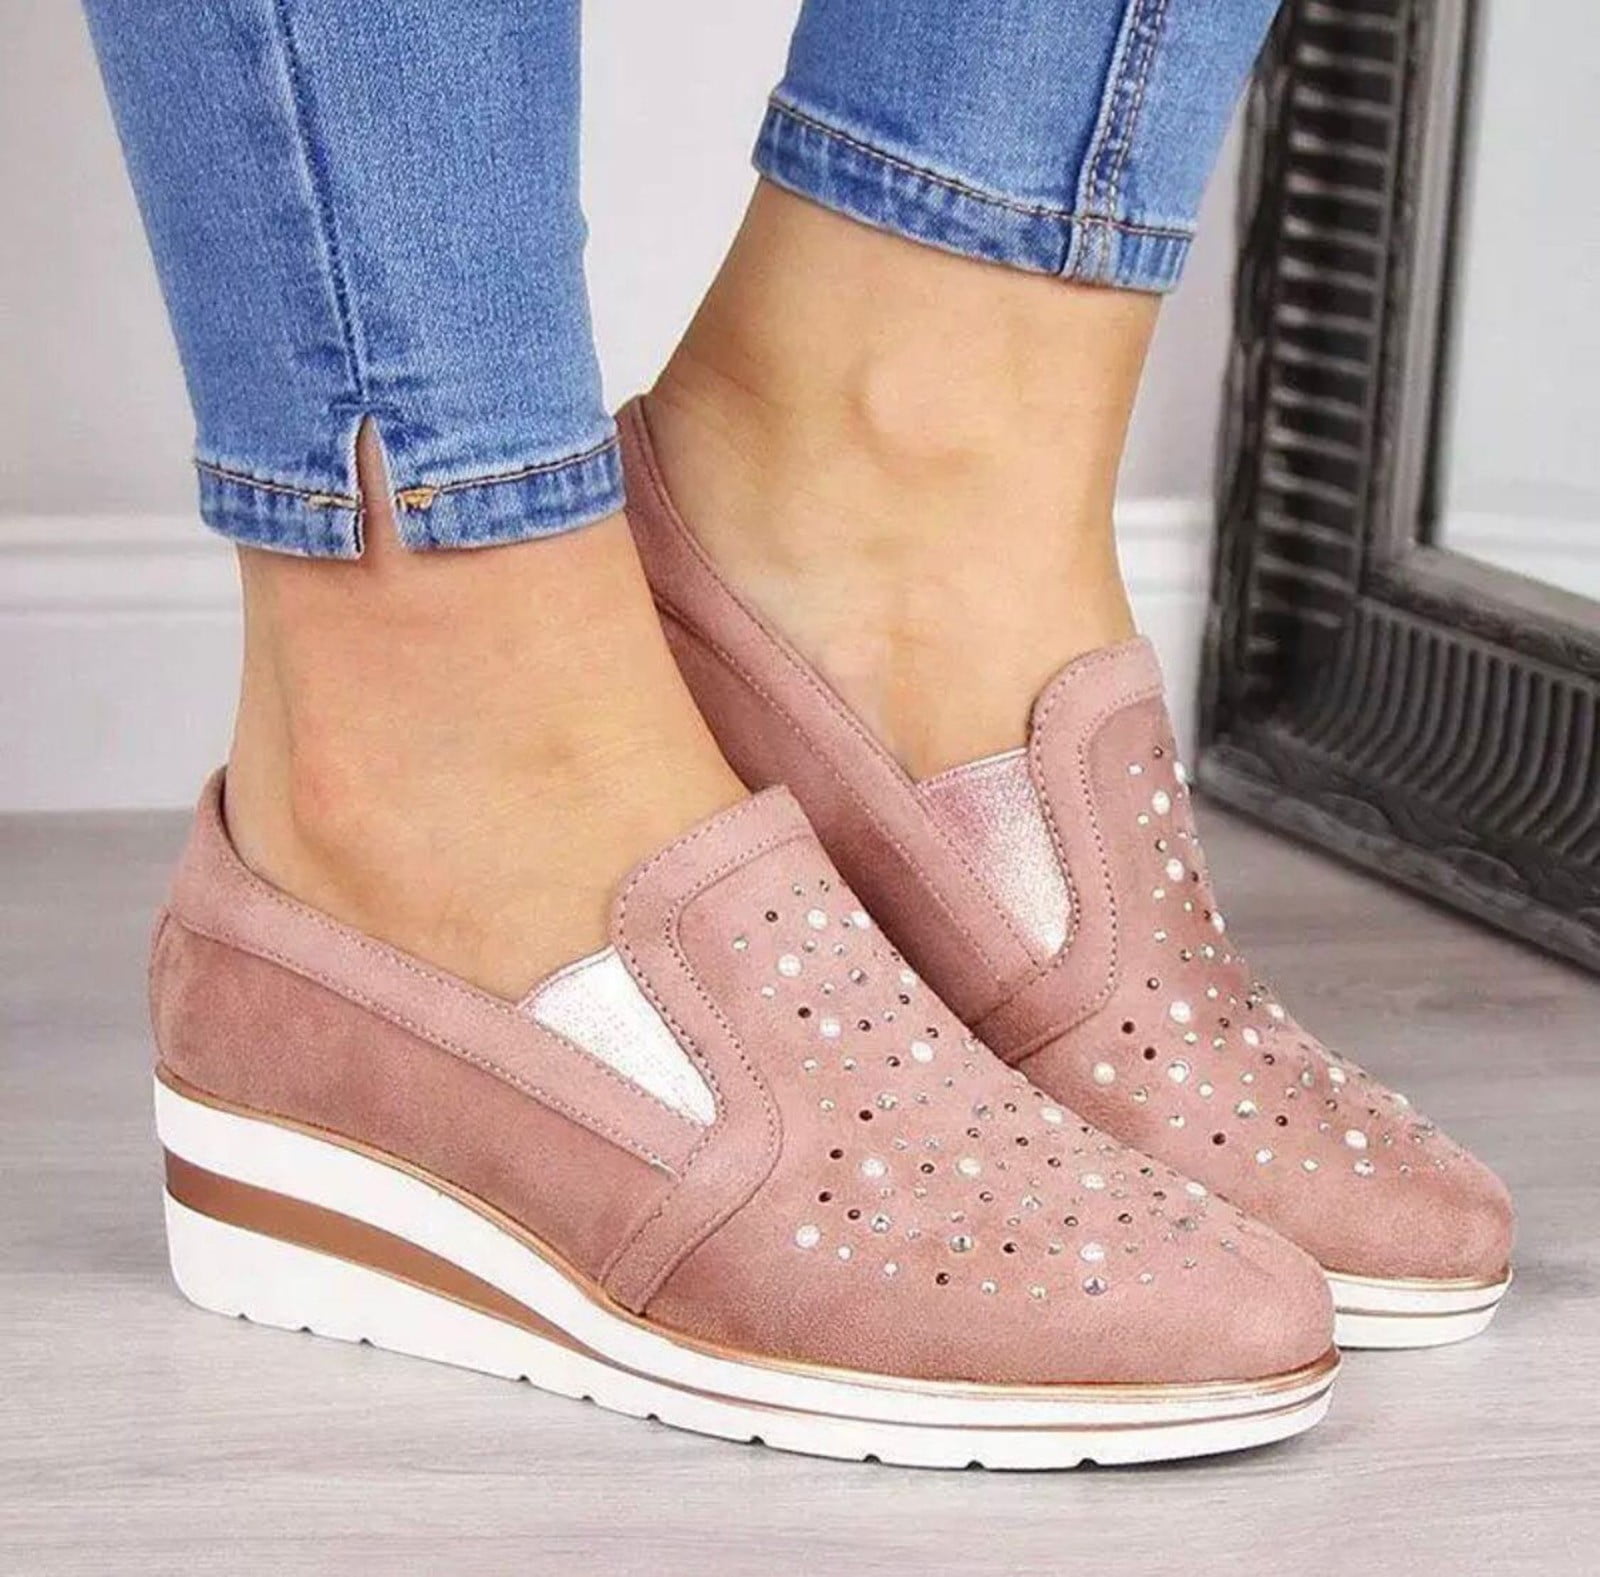 Feversole Women's Glitter Red Platform Slip on Sneaker Casual Flat Loafers US6/EU36